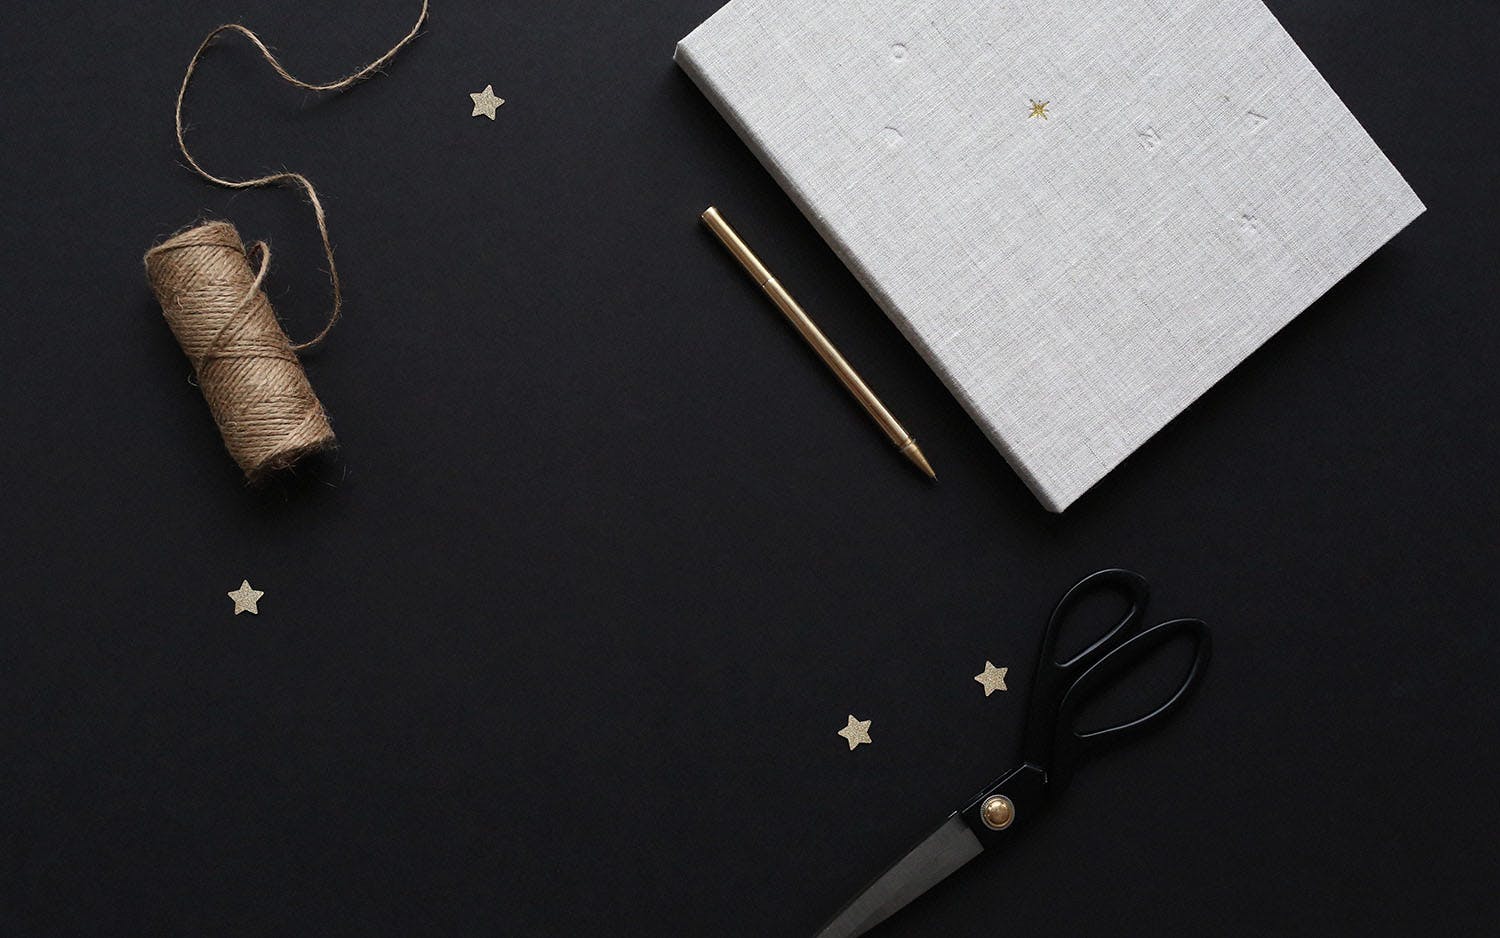 Tråd, sax och anteckningsblock med penna på svart underlag omgiven av små dekorationsstjärnor